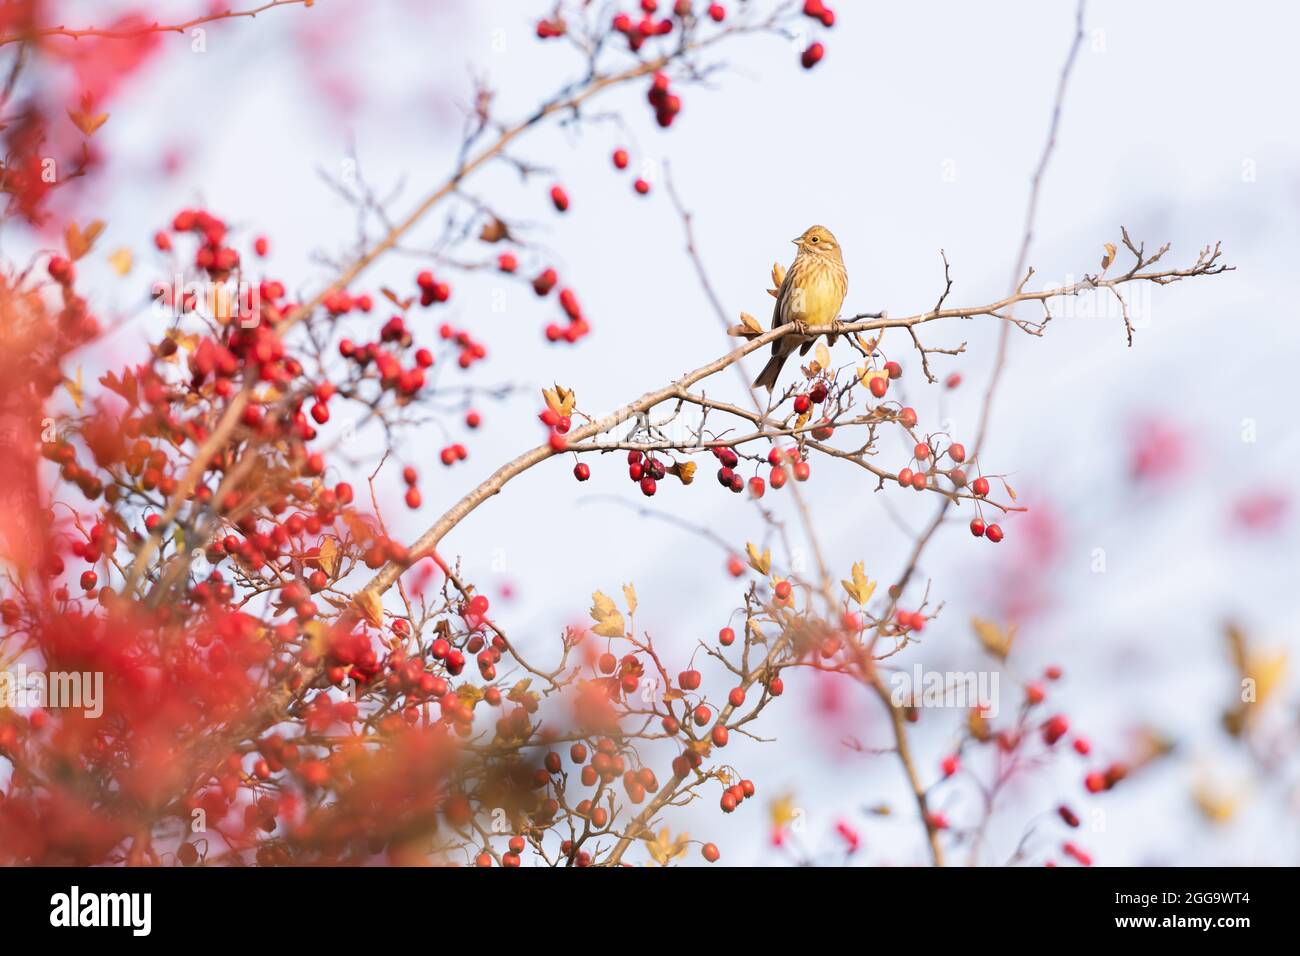 Aves amarillas comiendo bayas en arbusto rojo en otoño. Fotografía de aves Foto de stock